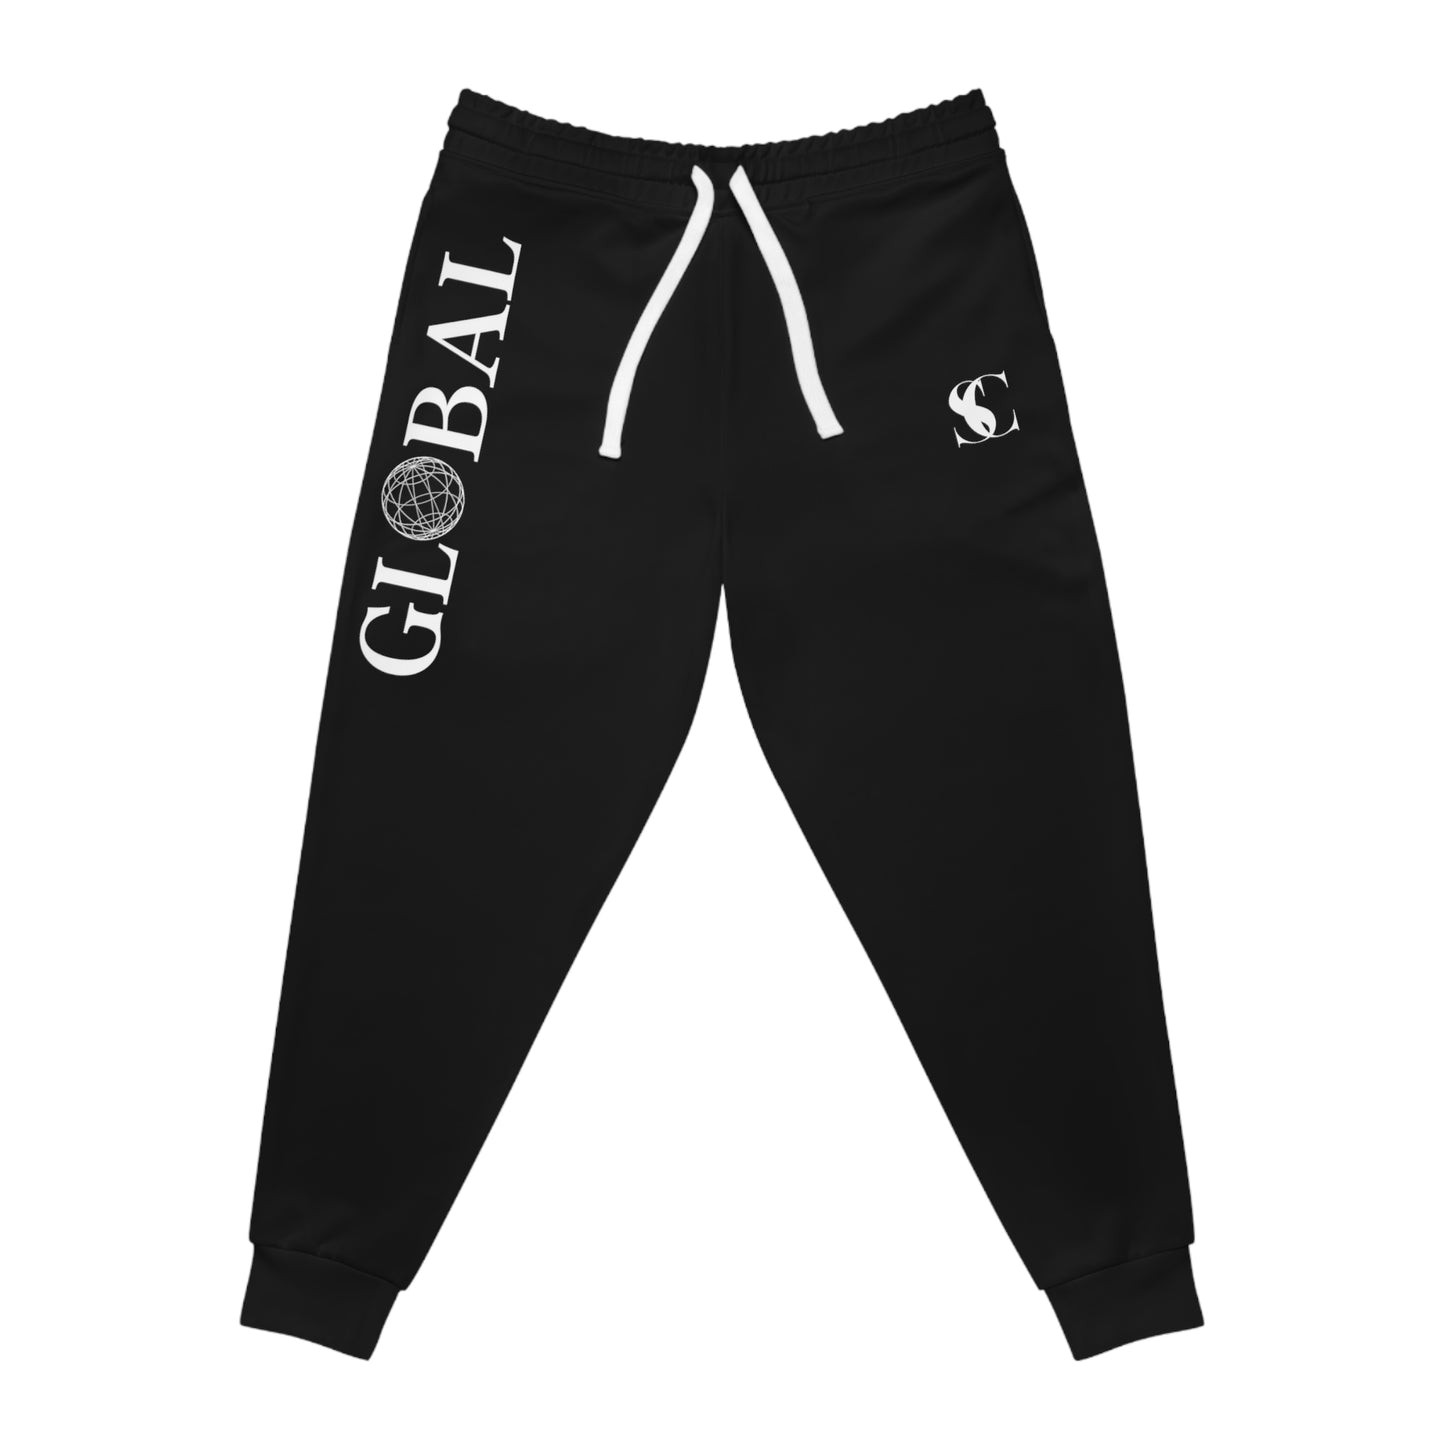 Men's Global sweatpants - Black